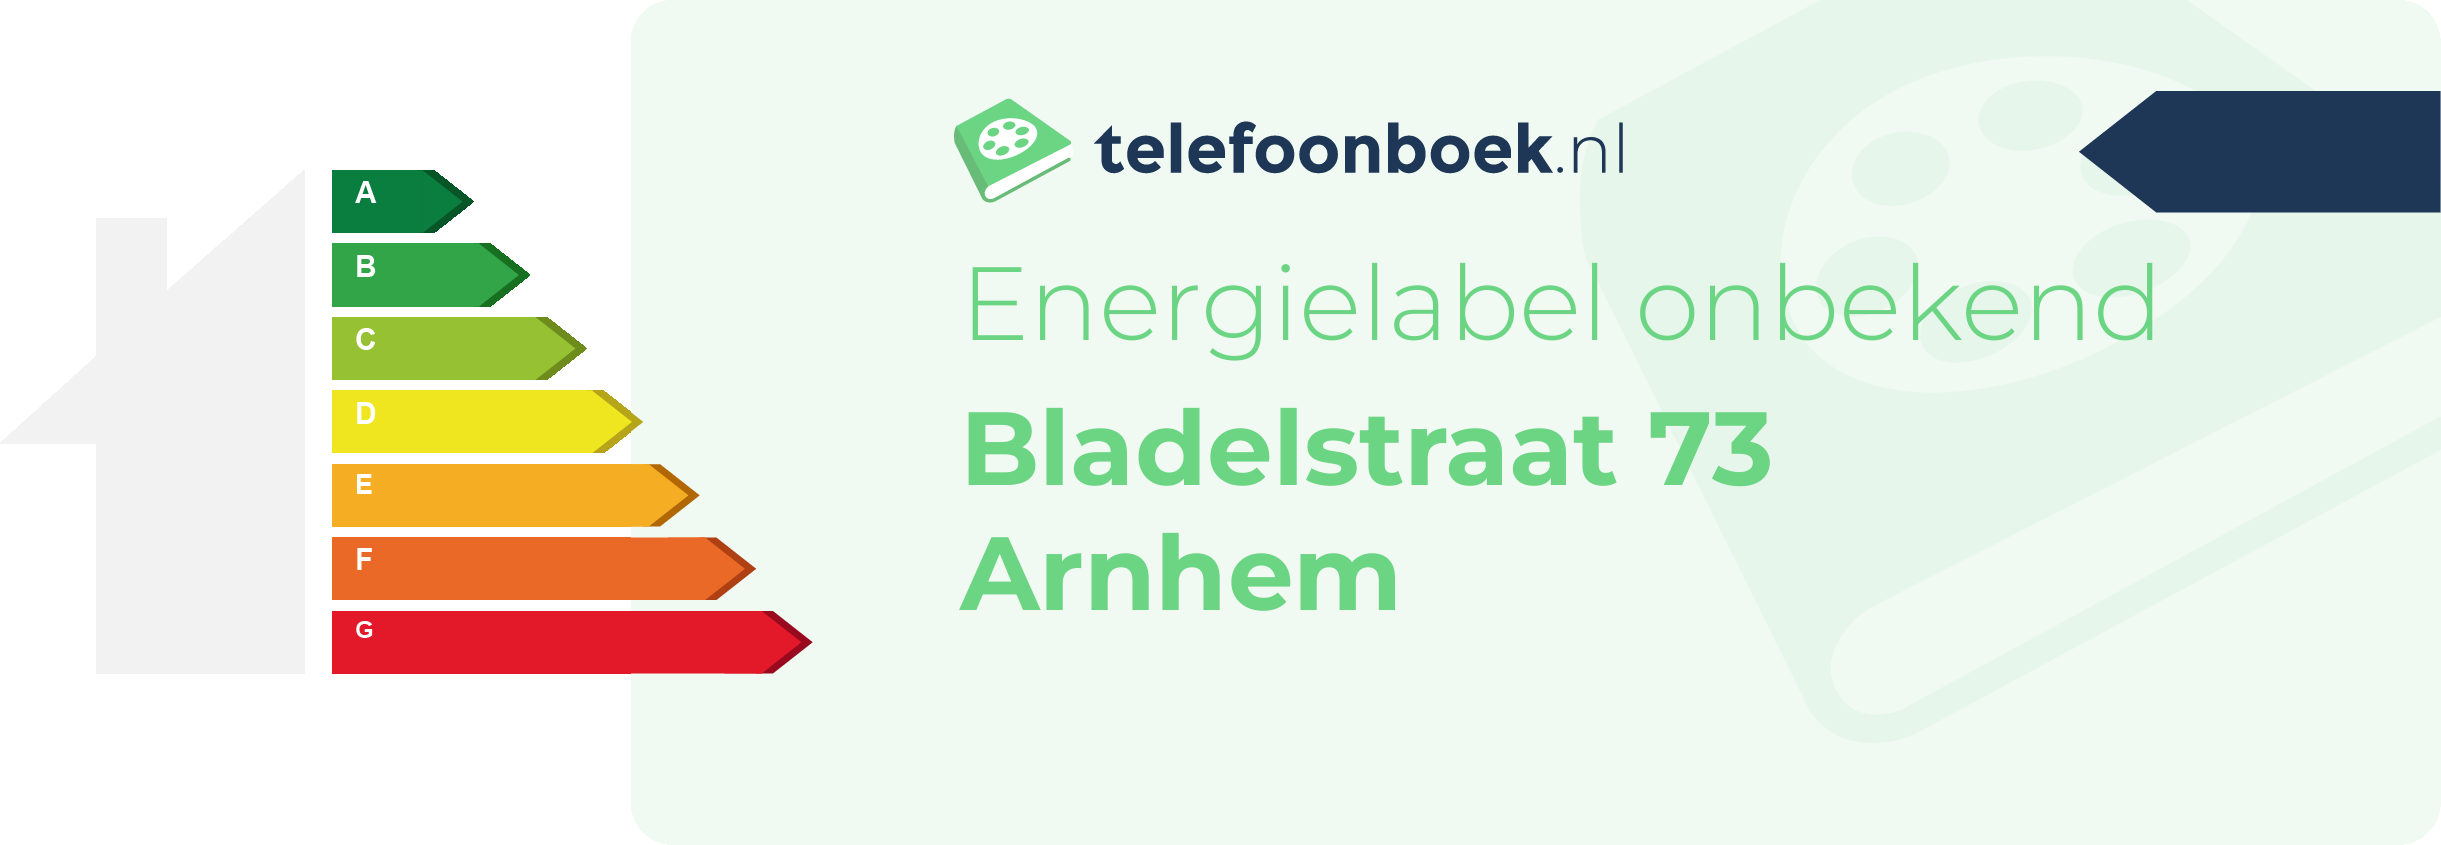 Energielabel Bladelstraat 73 Arnhem